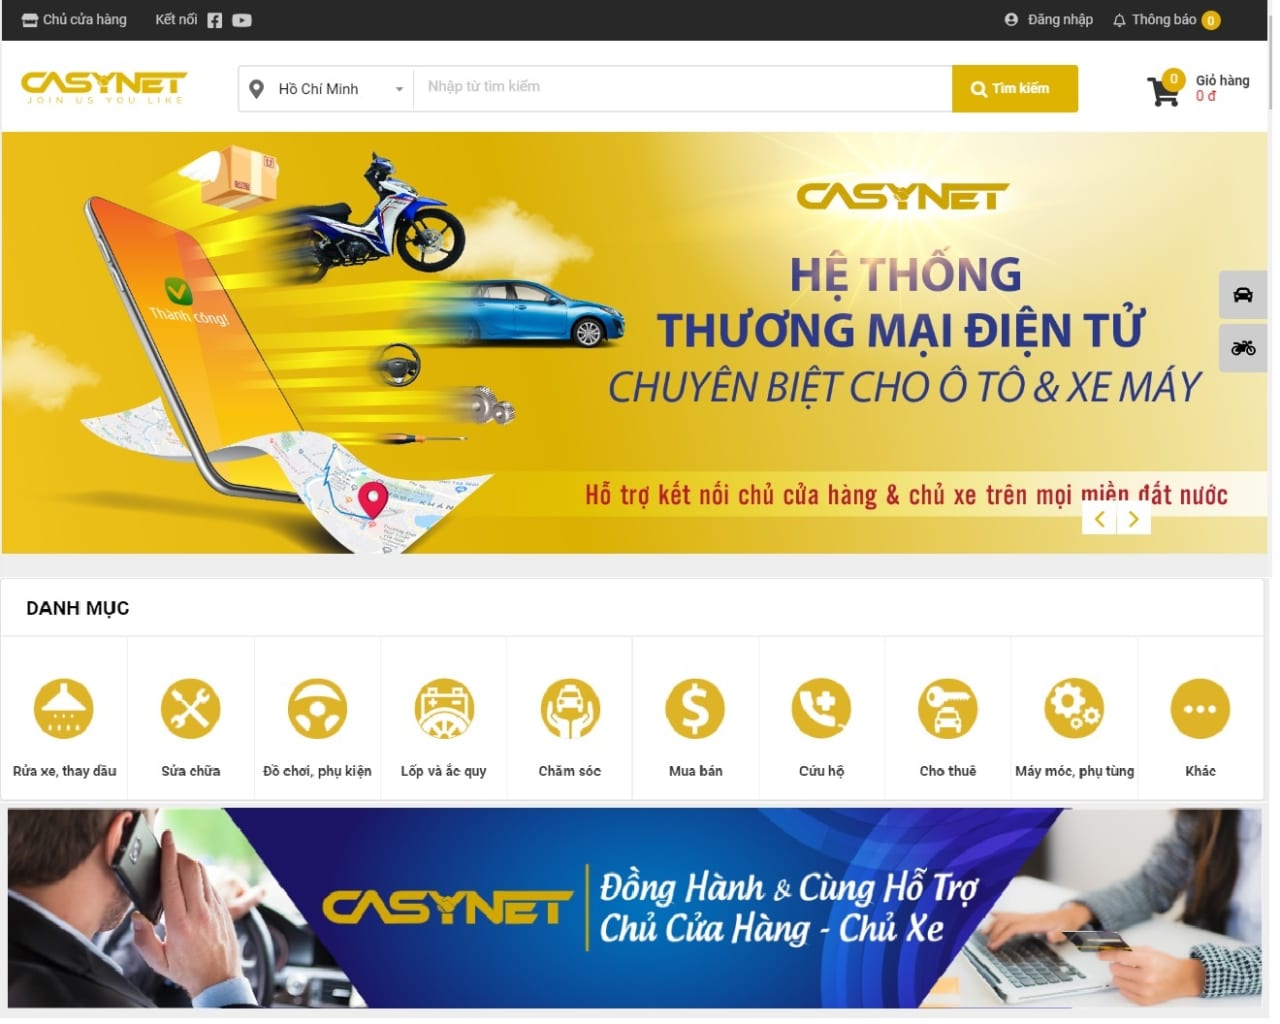 Casynet đăng bài PR quảng cáo trên báo Dân trí và VnExpress